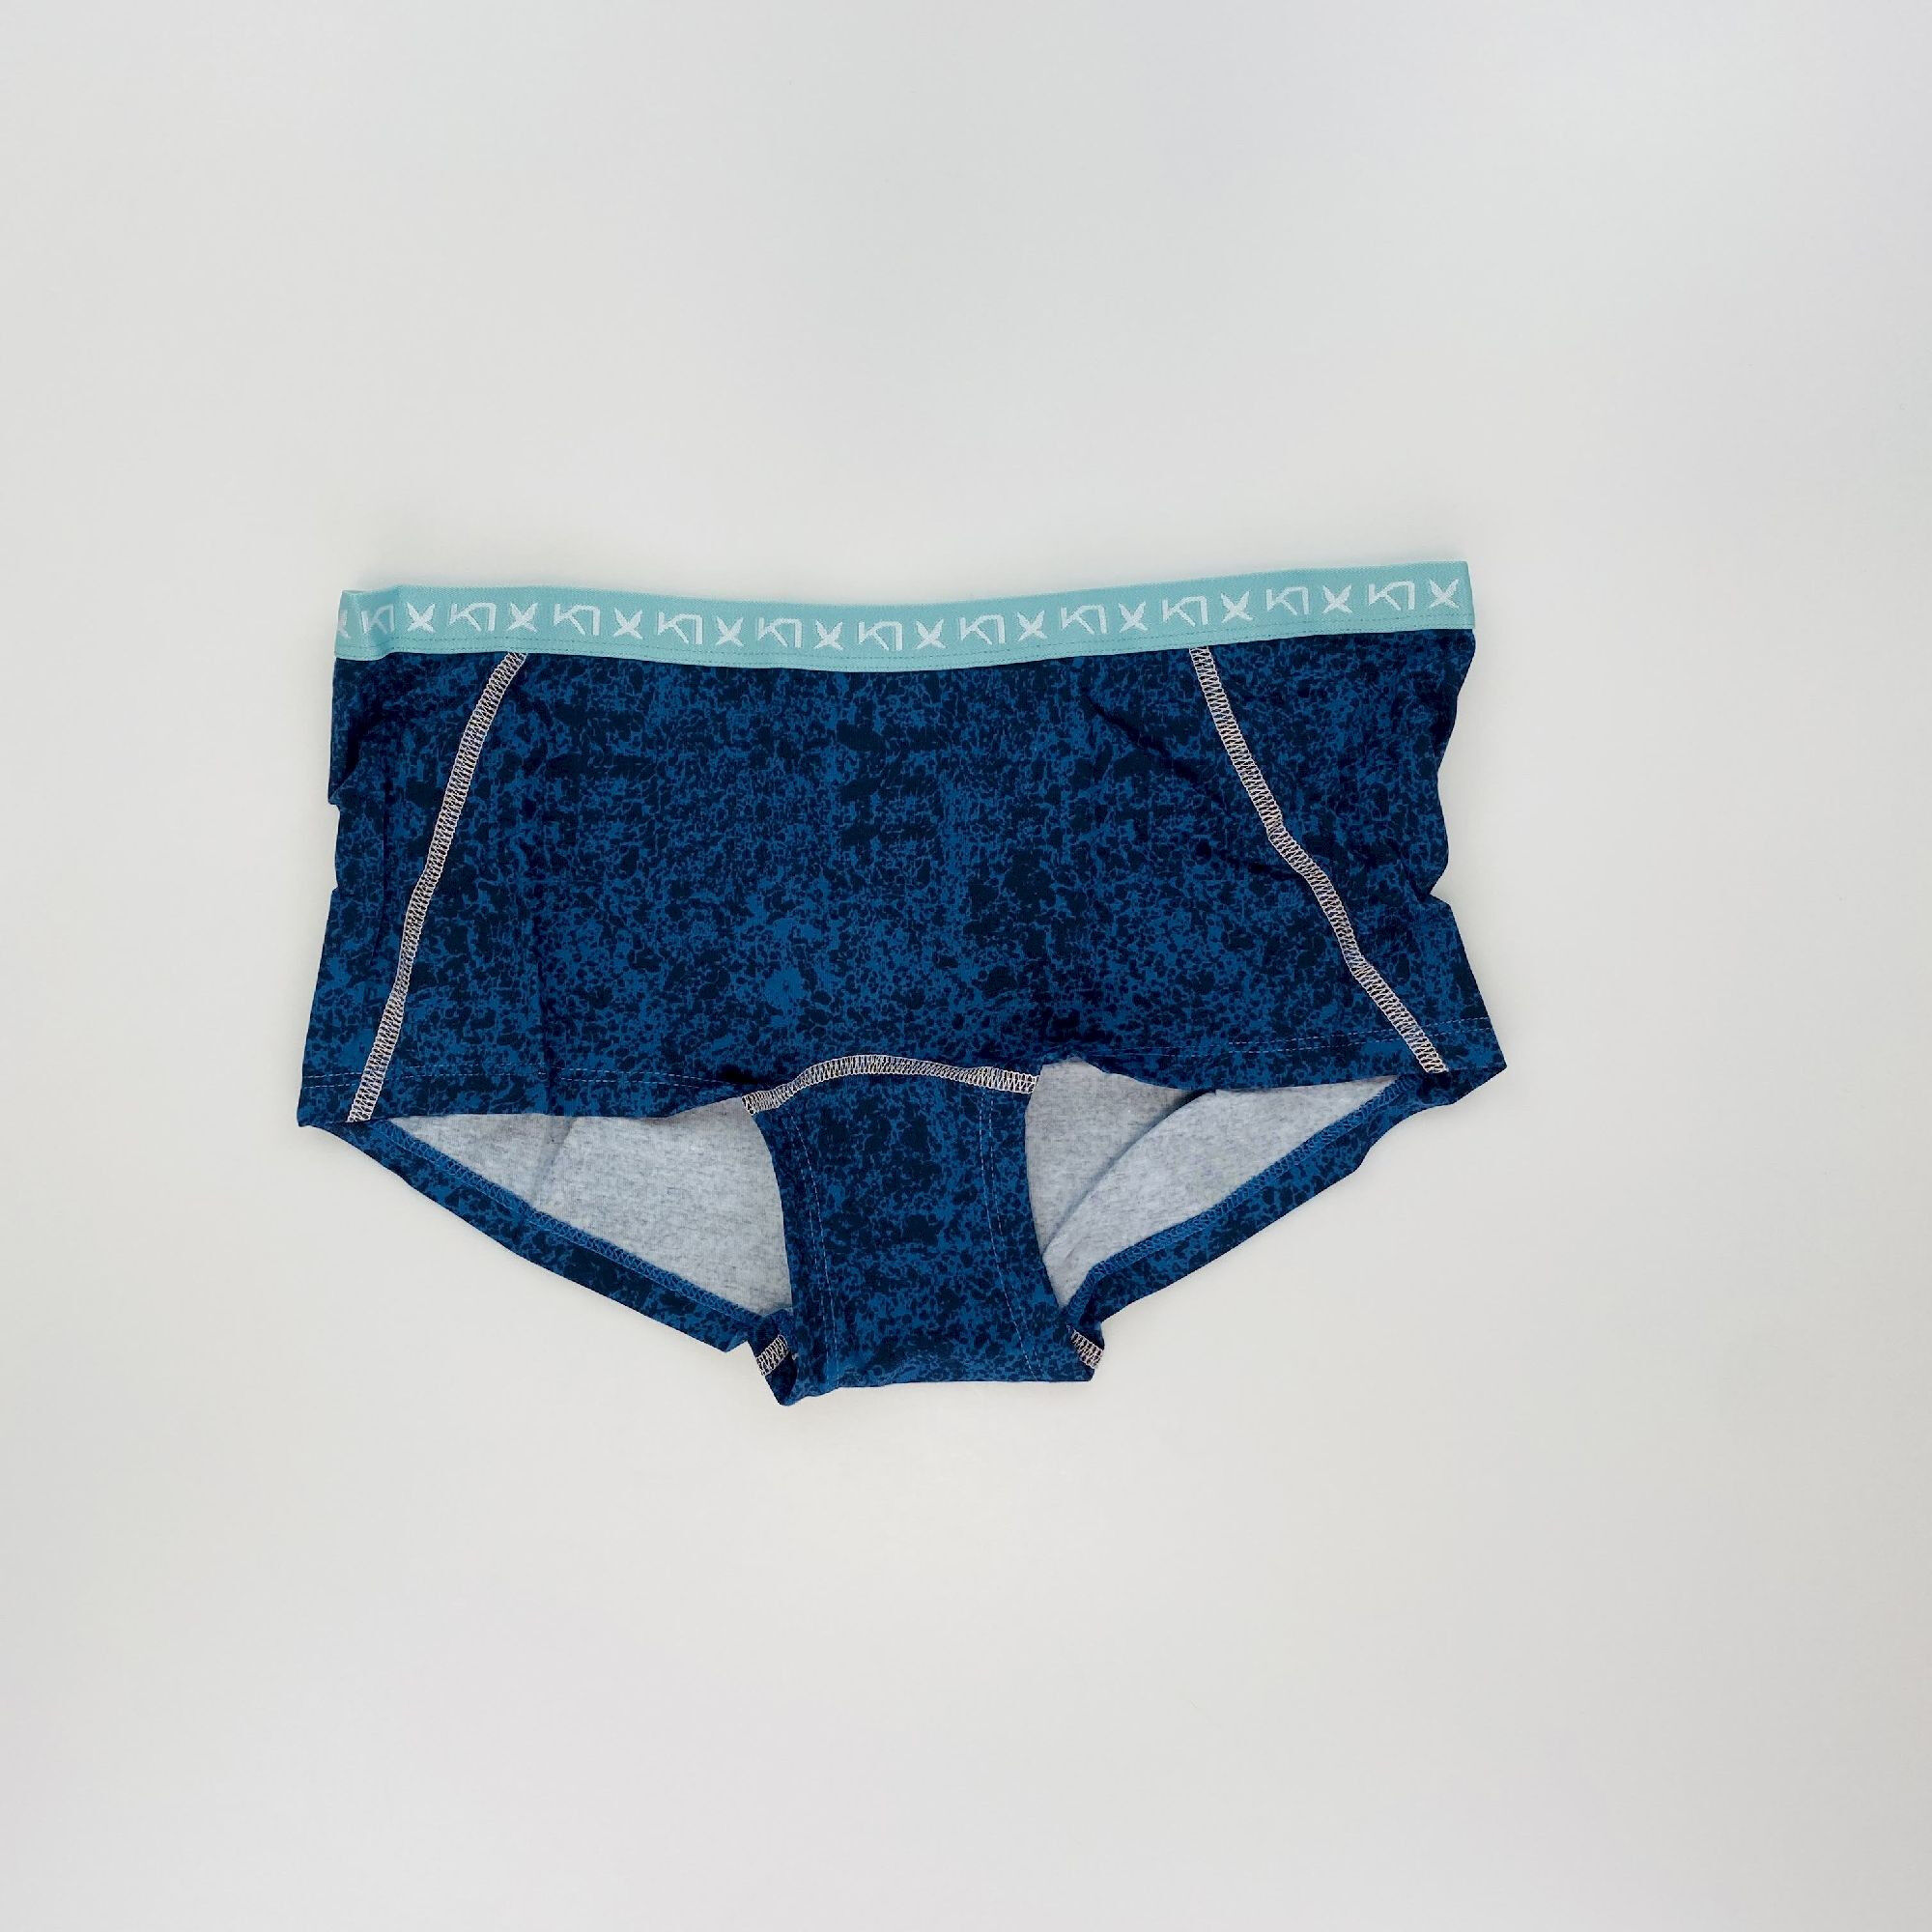 Kari Traa Dekorativ Hipster - Second hand Underwear - Blue - M